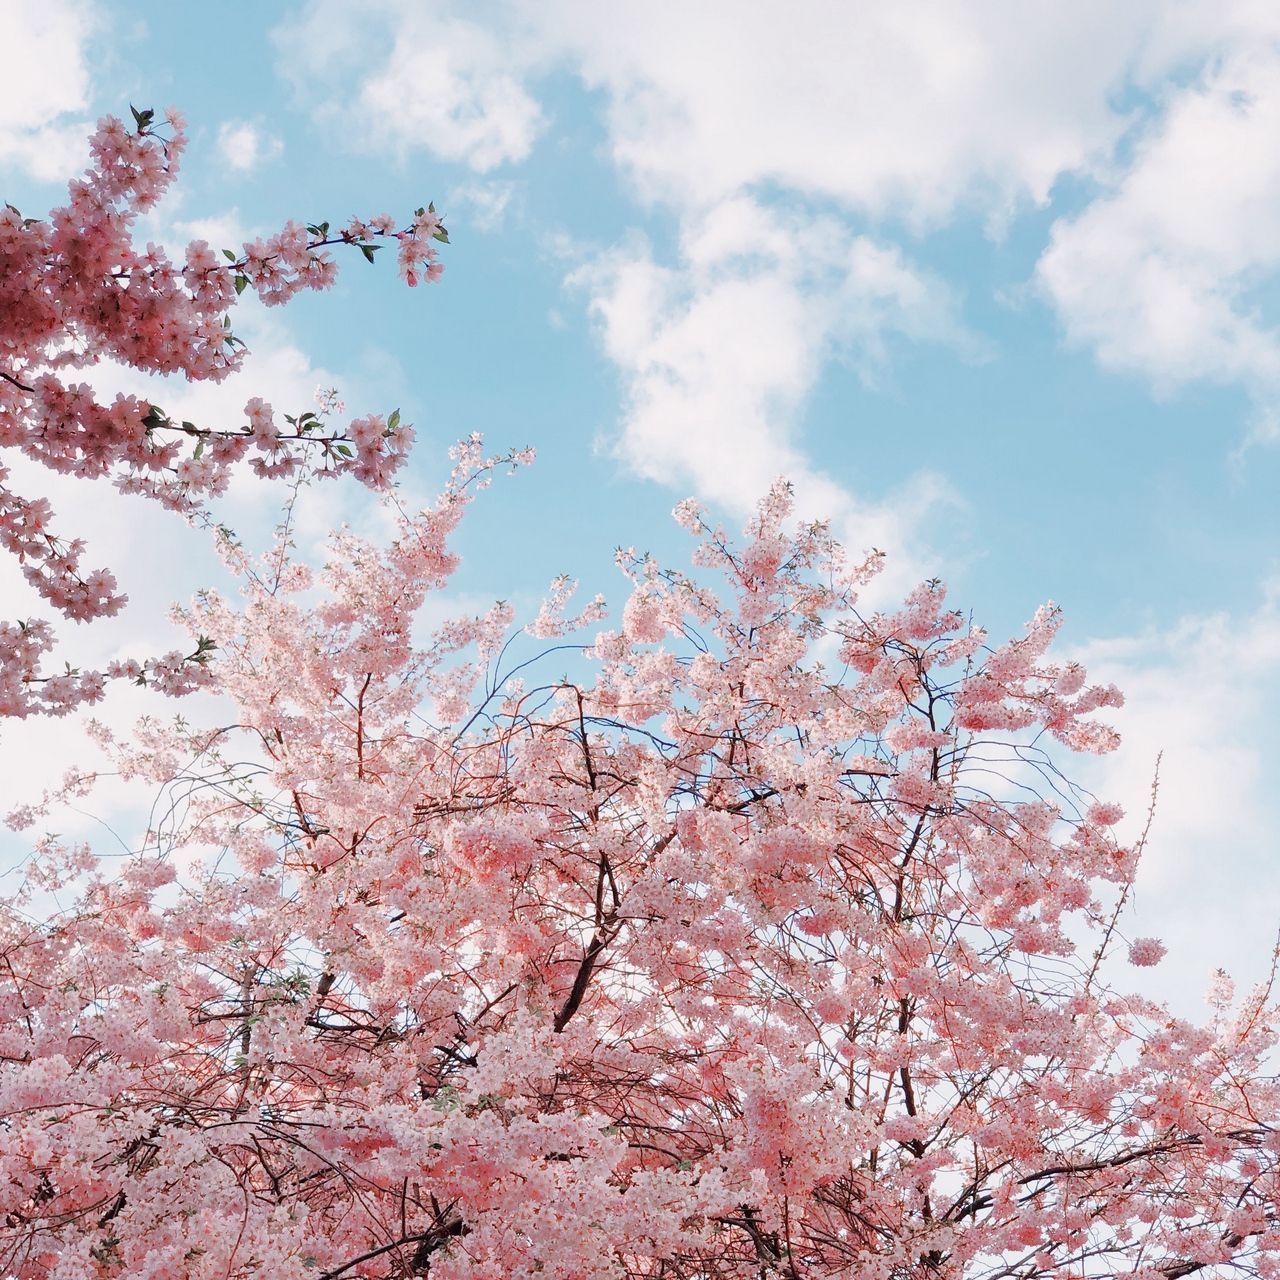 Cherrie blossoms onlyfans